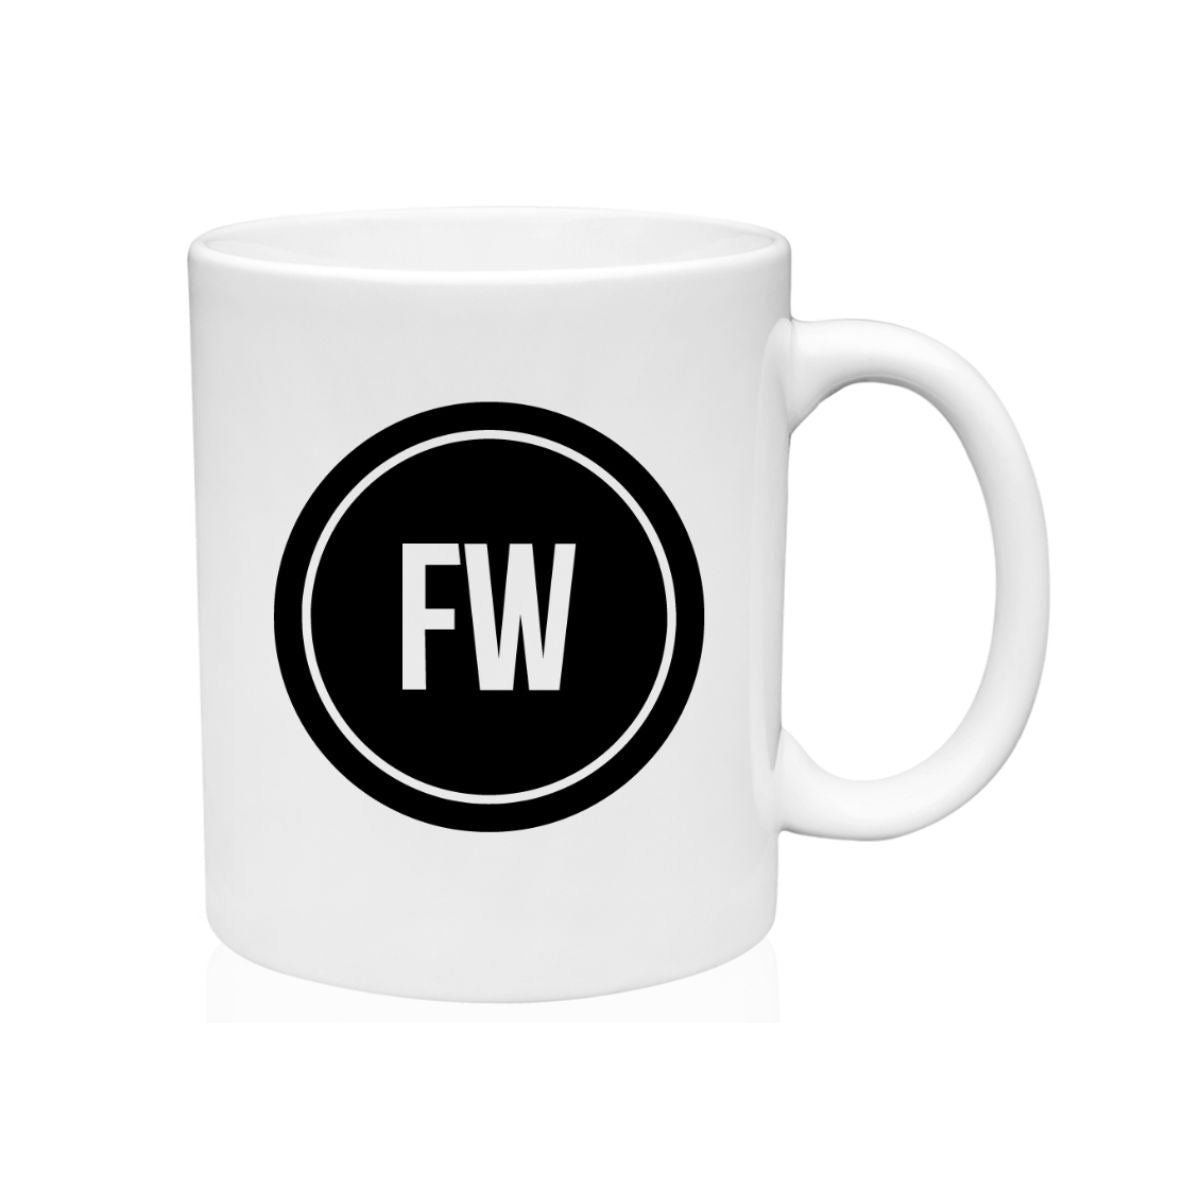 For Wellness Coffee Mug